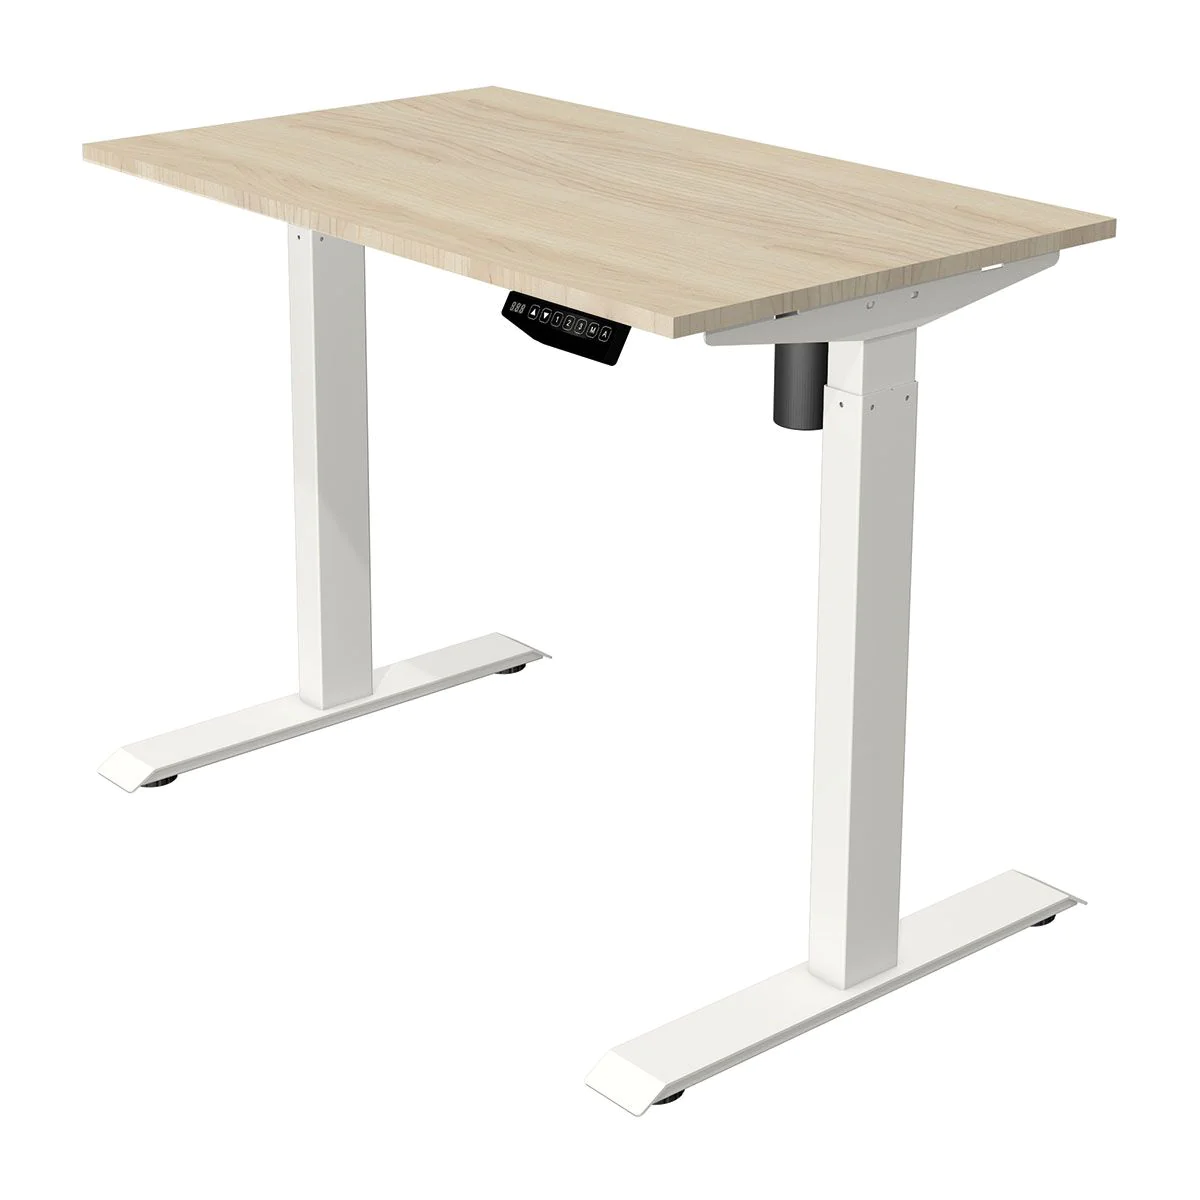 Höhenverstellbarer Schreibtisch Move 1 100 x 60 cm - Ahorn/Weiß - KMA-10388750